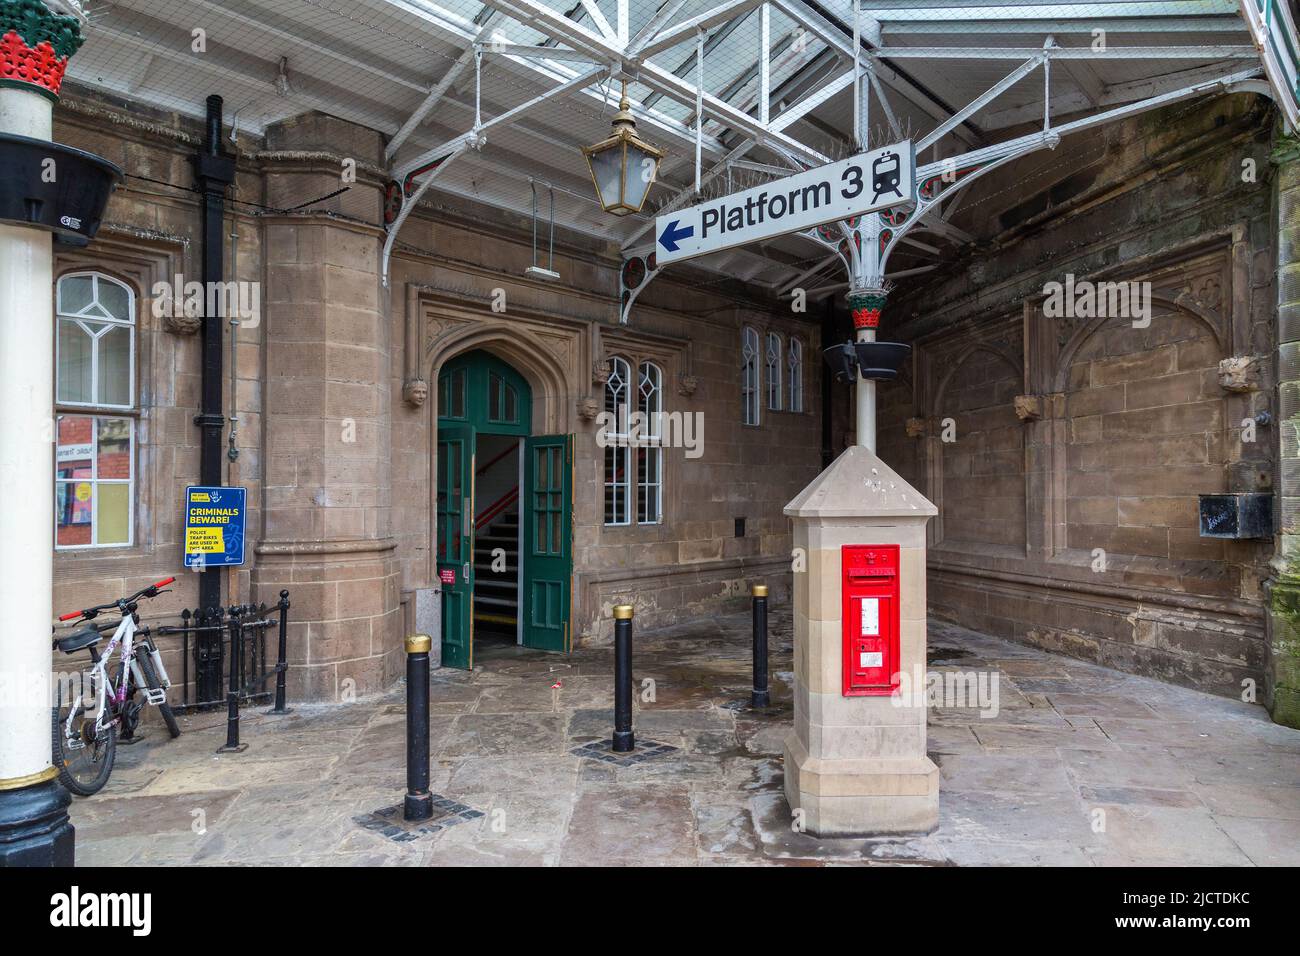 Des têtes de gargouille en pierre ornées entourent une porte et des murs à la gare de Shrewsbury, ce qui lui donne une ambiance gothique sinistre. Banque D'Images